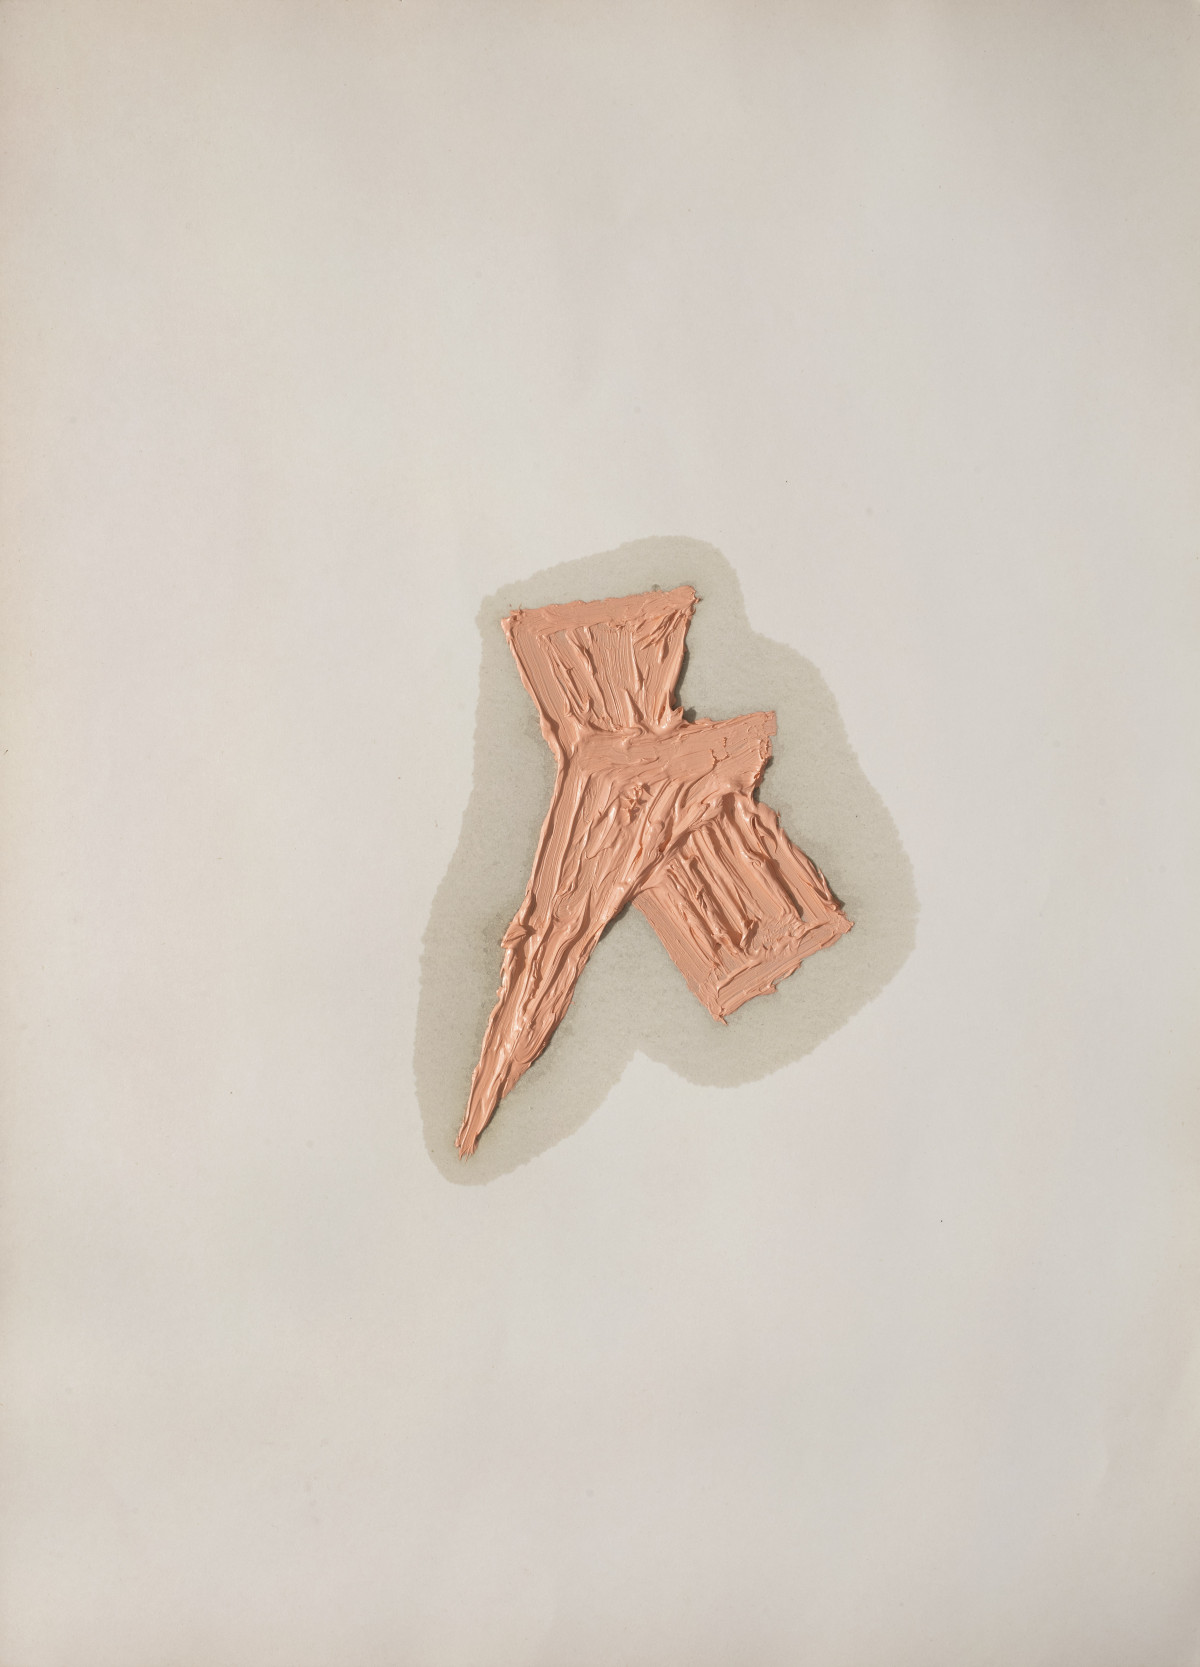 Alberto Garutti, ‘Pittura rosa tra piccoli oggetti’, 1995-2009, oil on cardboard